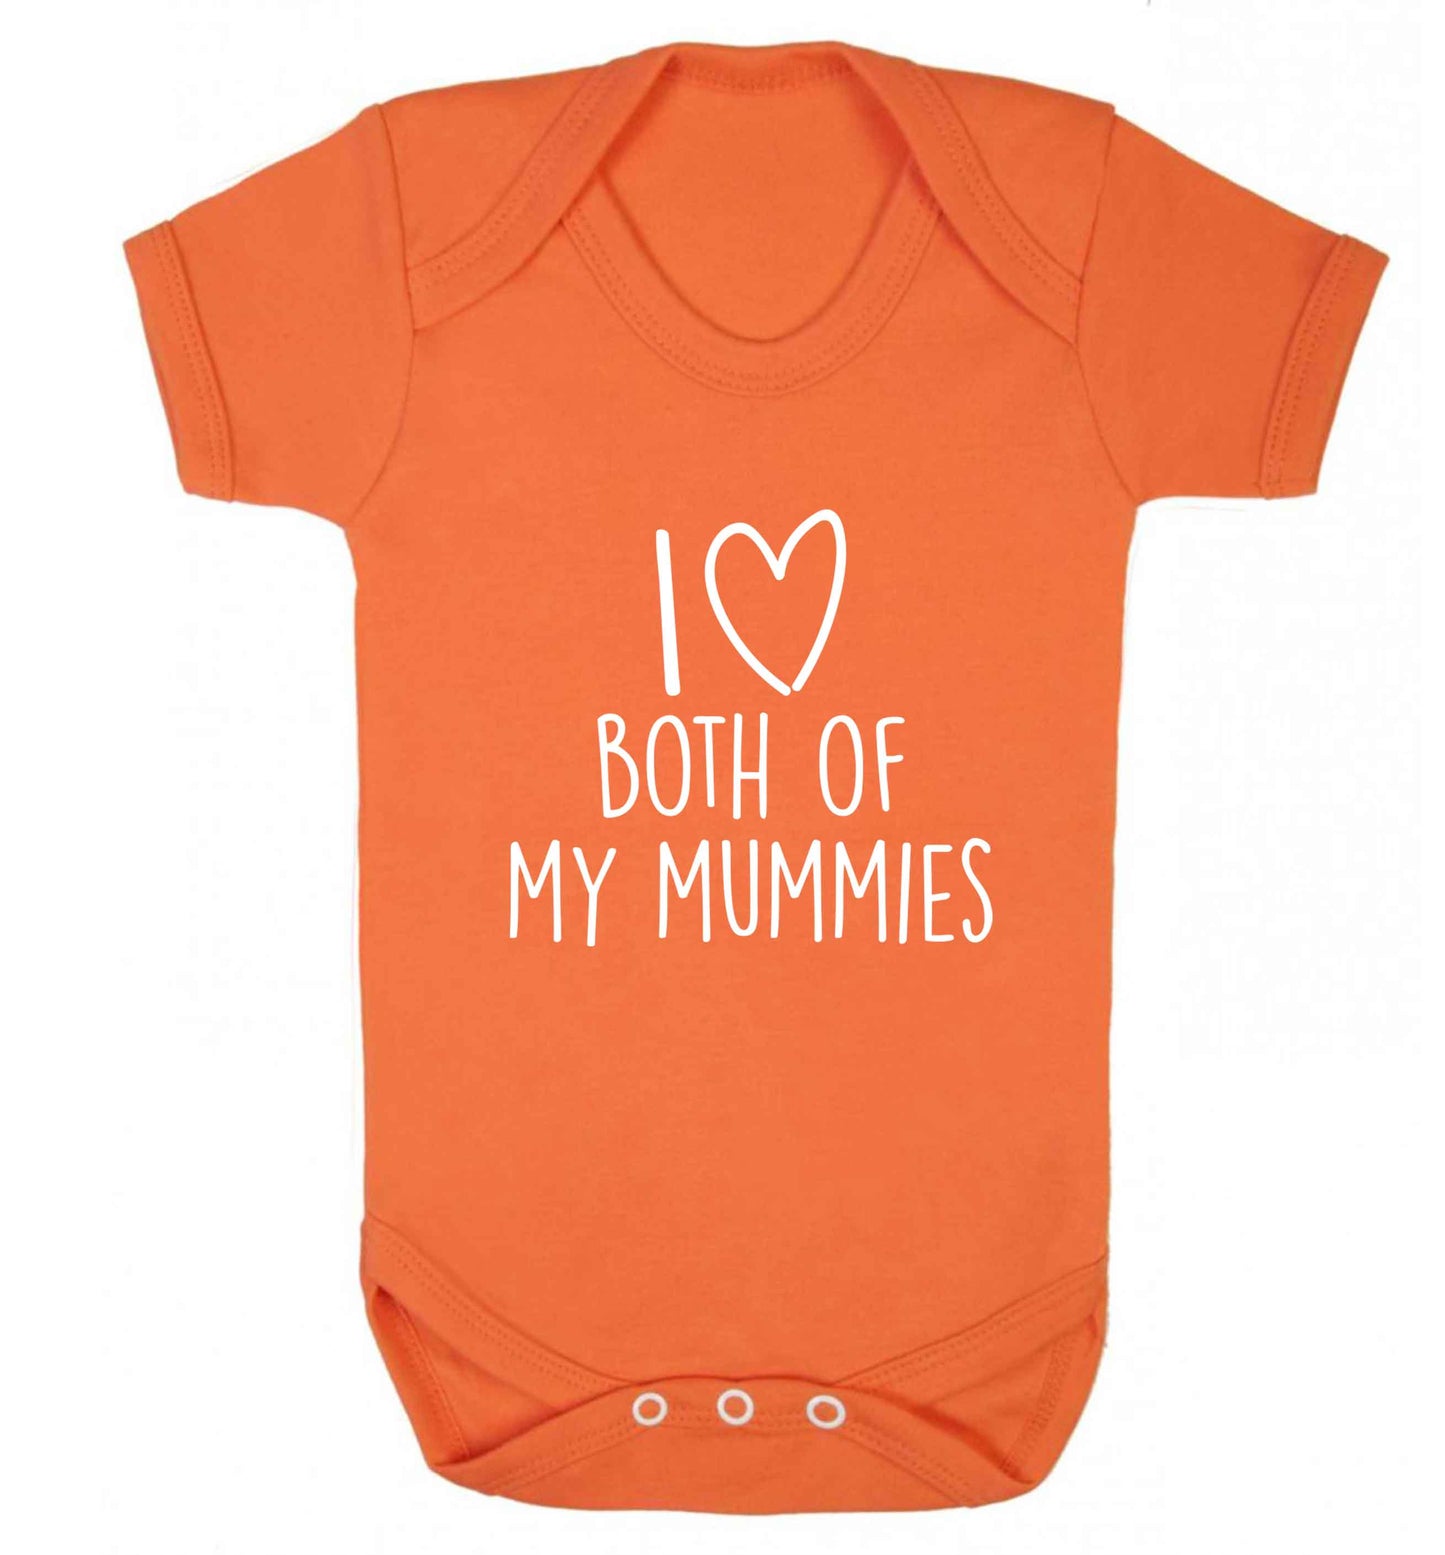 I love both of my mummies baby vest orange 18-24 months